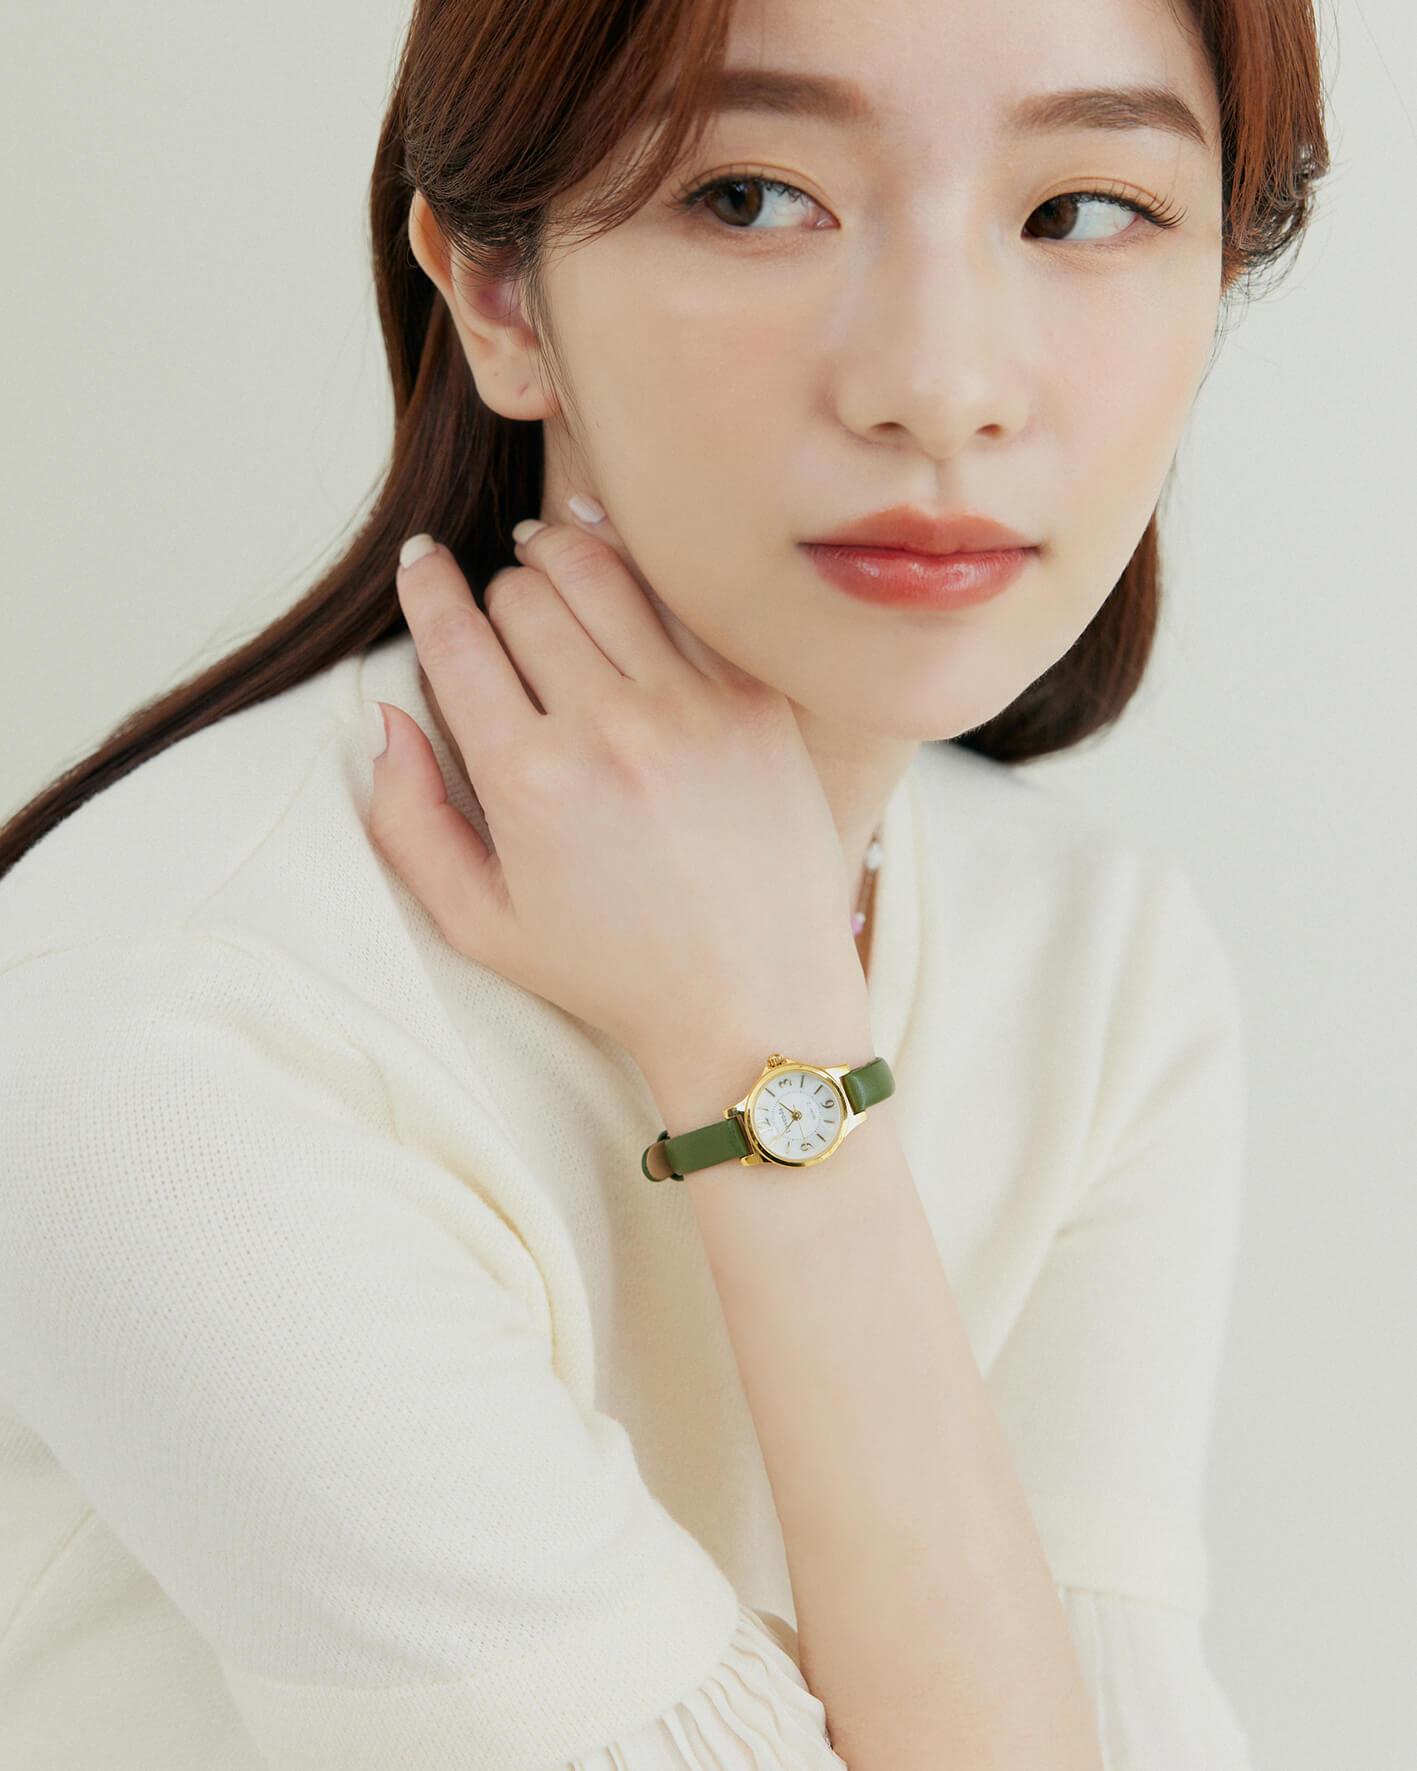 溫柔。韓國品牌LAVENDA手錶/3色 - 綠色 聖誕送禮 · 交換禮物專區|$1000↑ · 輕奢華專區🎁|人氣熱銷 | Best seller🔥|24hr快速出貨|新品上架 | New Arrival|手環 | Bracelets|手錶